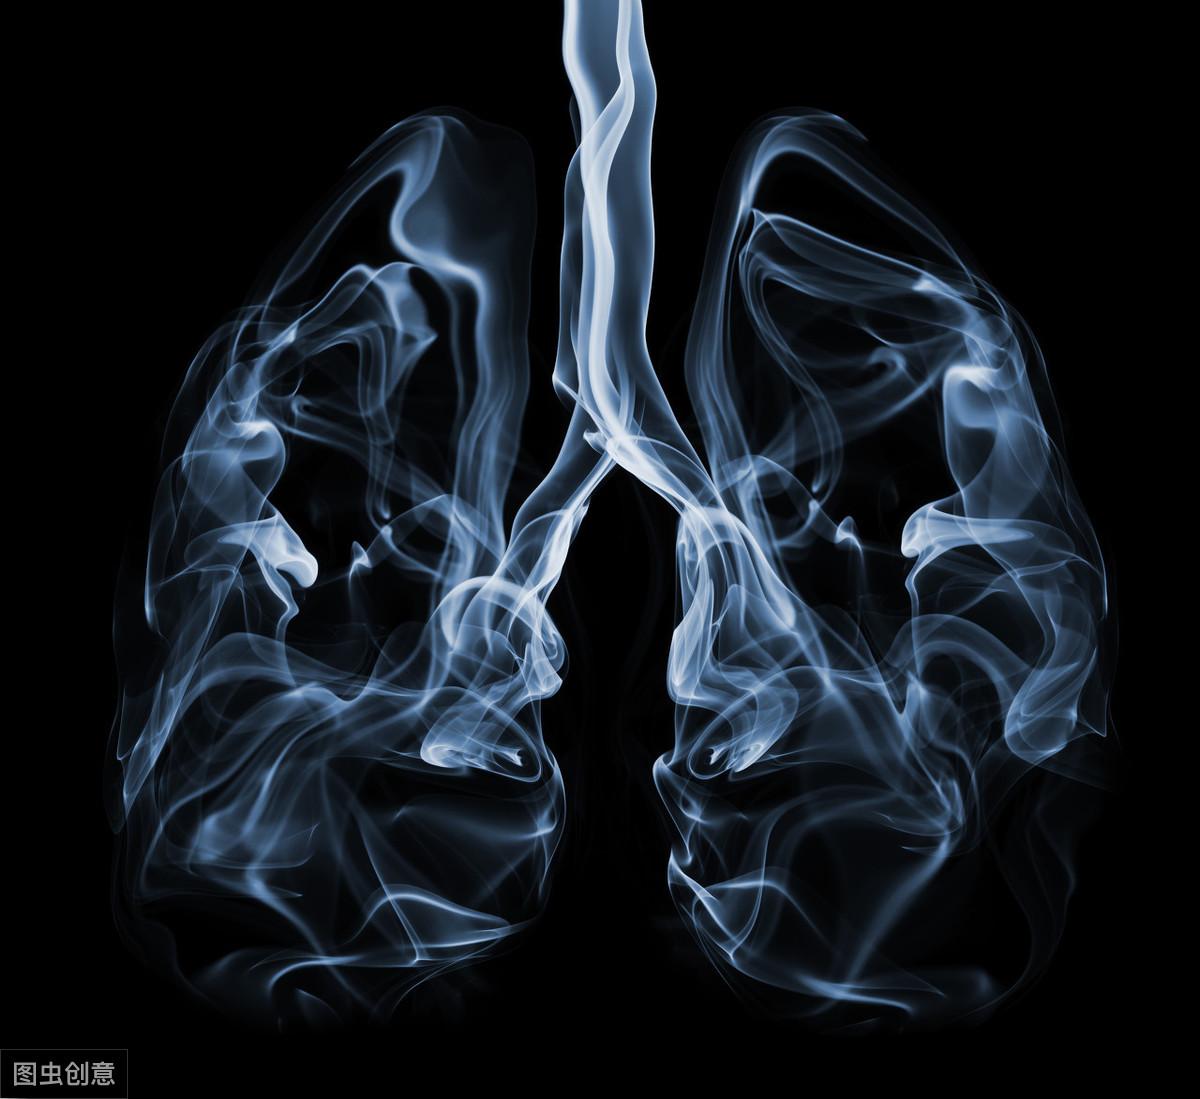 呼吸系统吸烟者的肺沉重 3D模型 $199 - .ma .max .upk .unitypackage .obj .c4d .fbx .usd ...